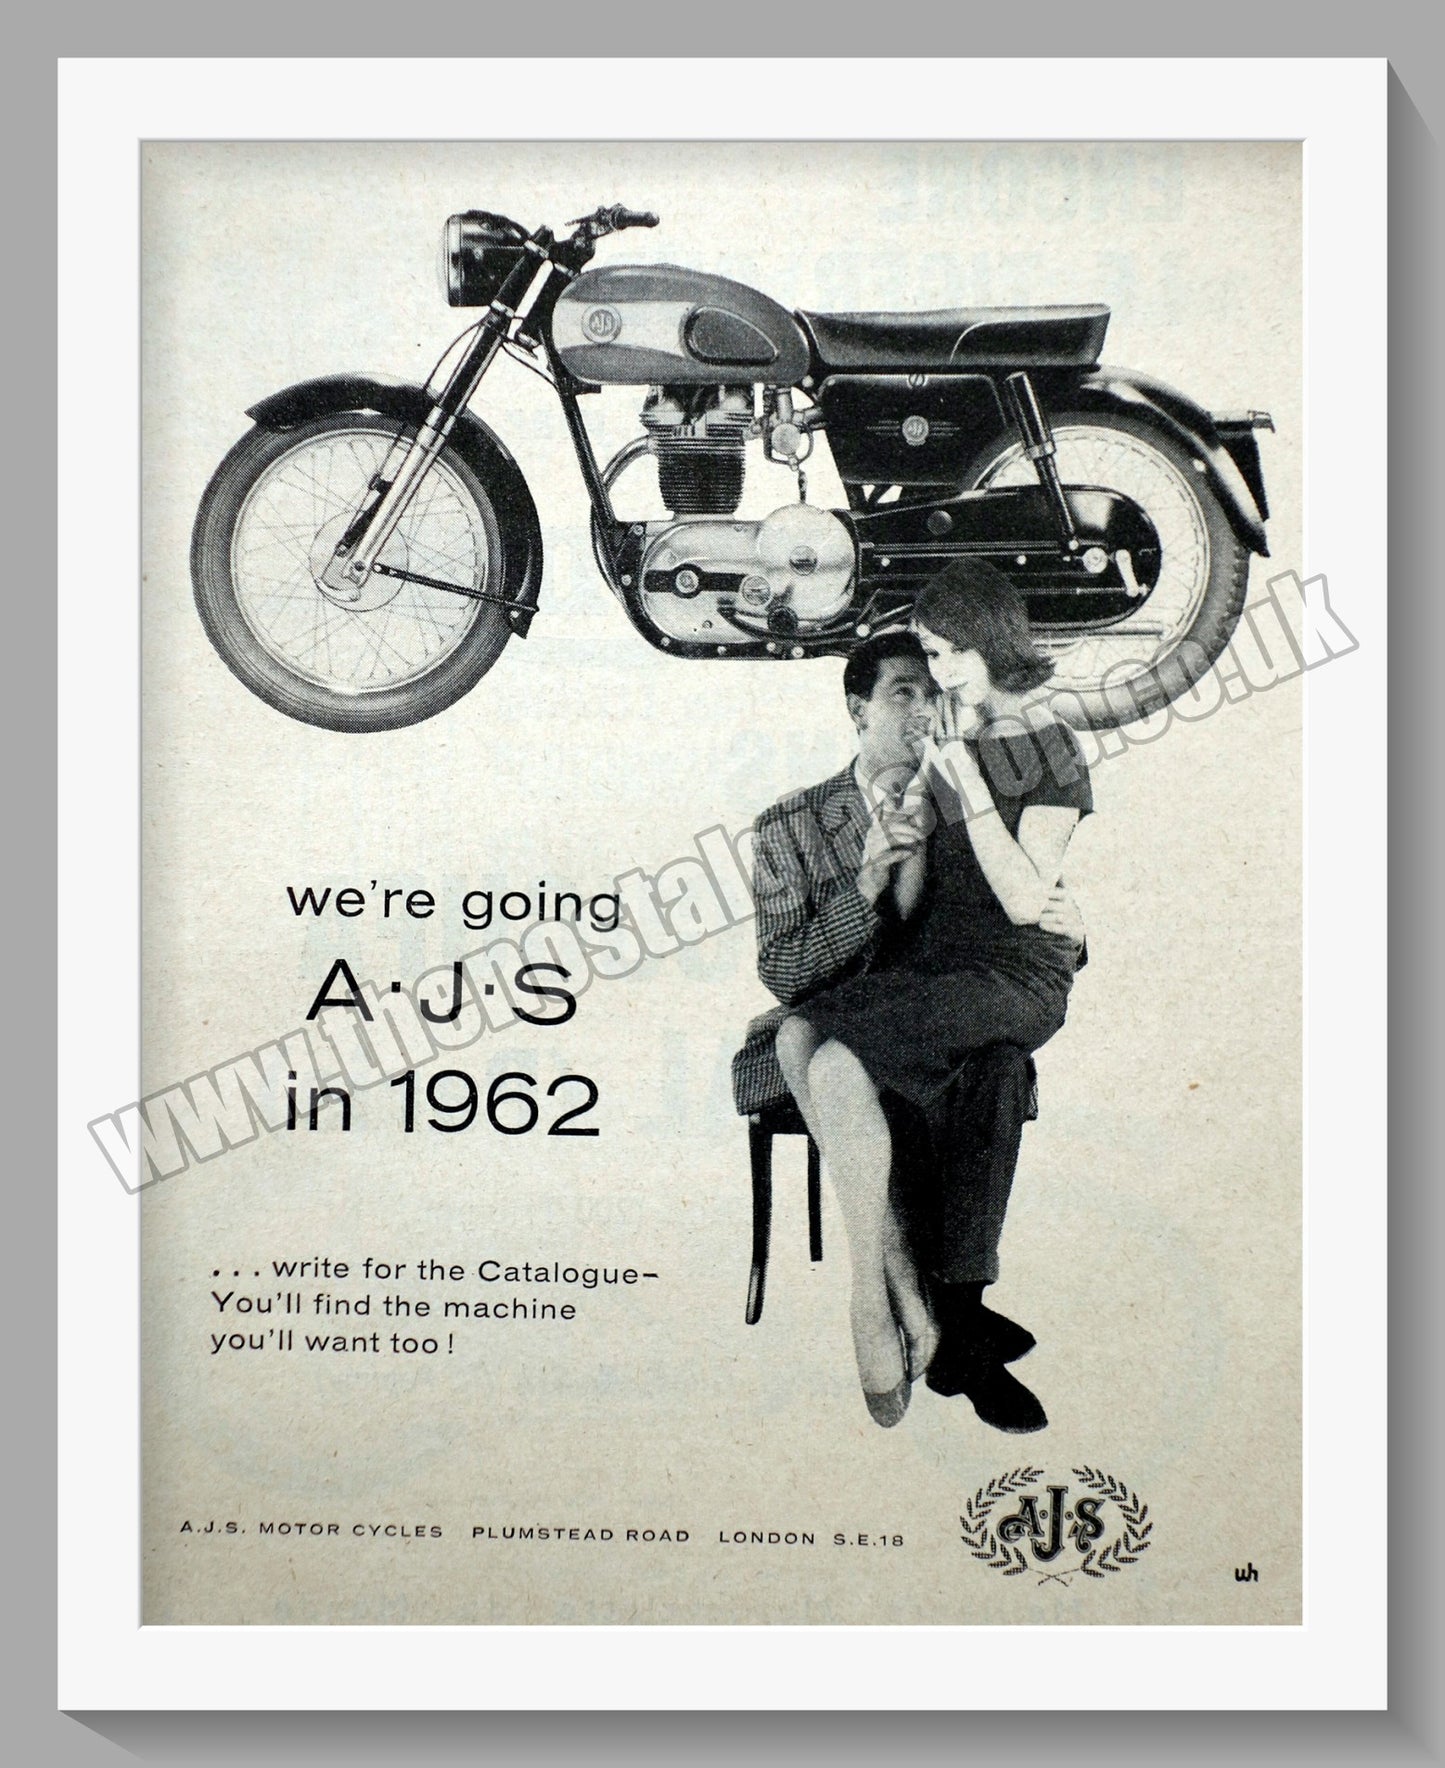 A.J.S Motorcycles. GO A.J.S Original Advert 1962 (ref AD56849)